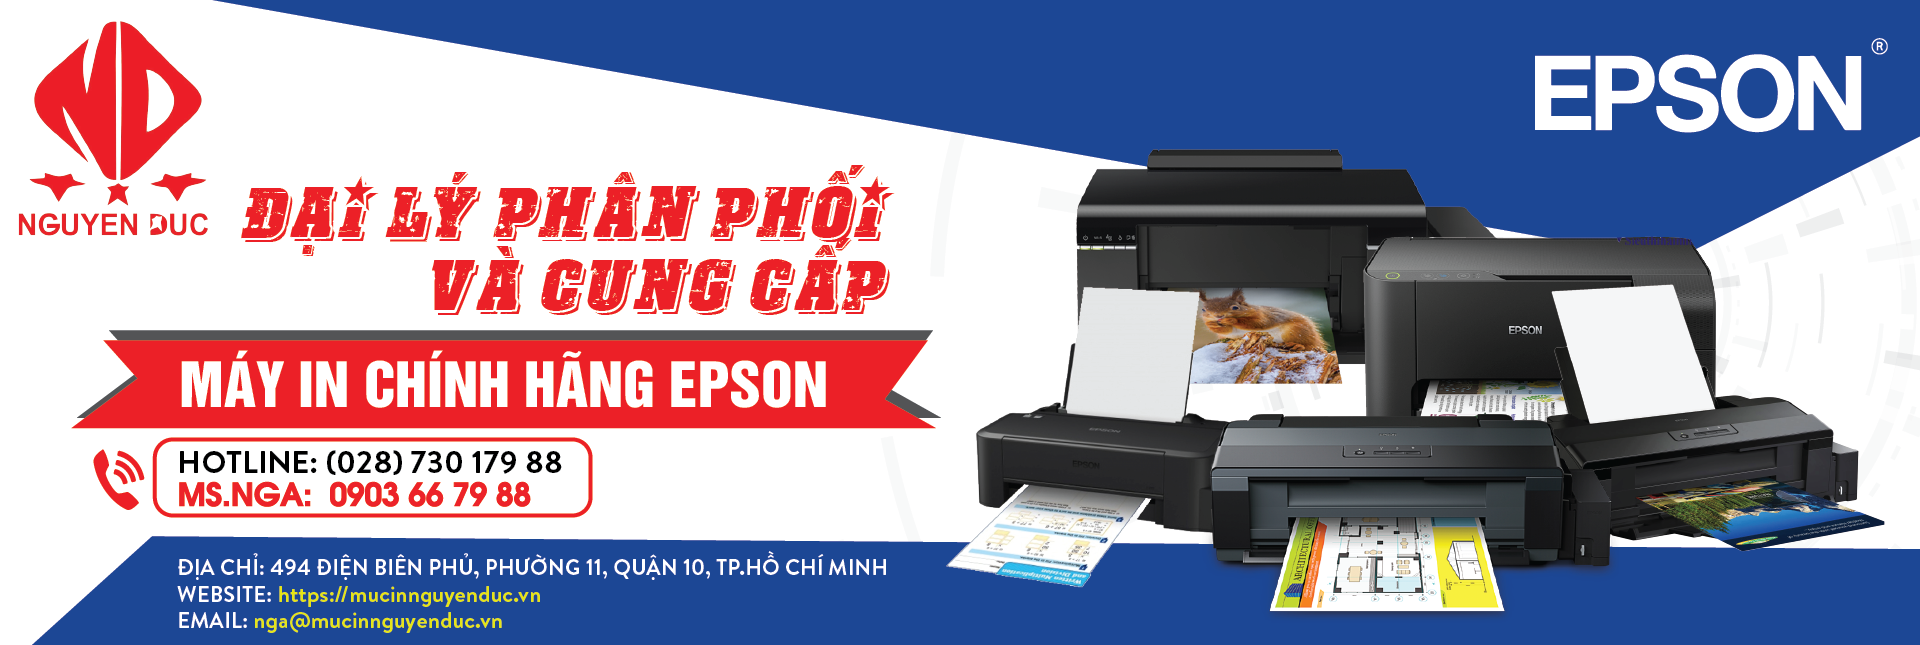 Đại lý phân phối máy quét tài liệu di động Epson WorkForce DS-310, giao hàng và lắp đặt tại Quận Hóc Môn, Thành Phố Hồ Chí Minh